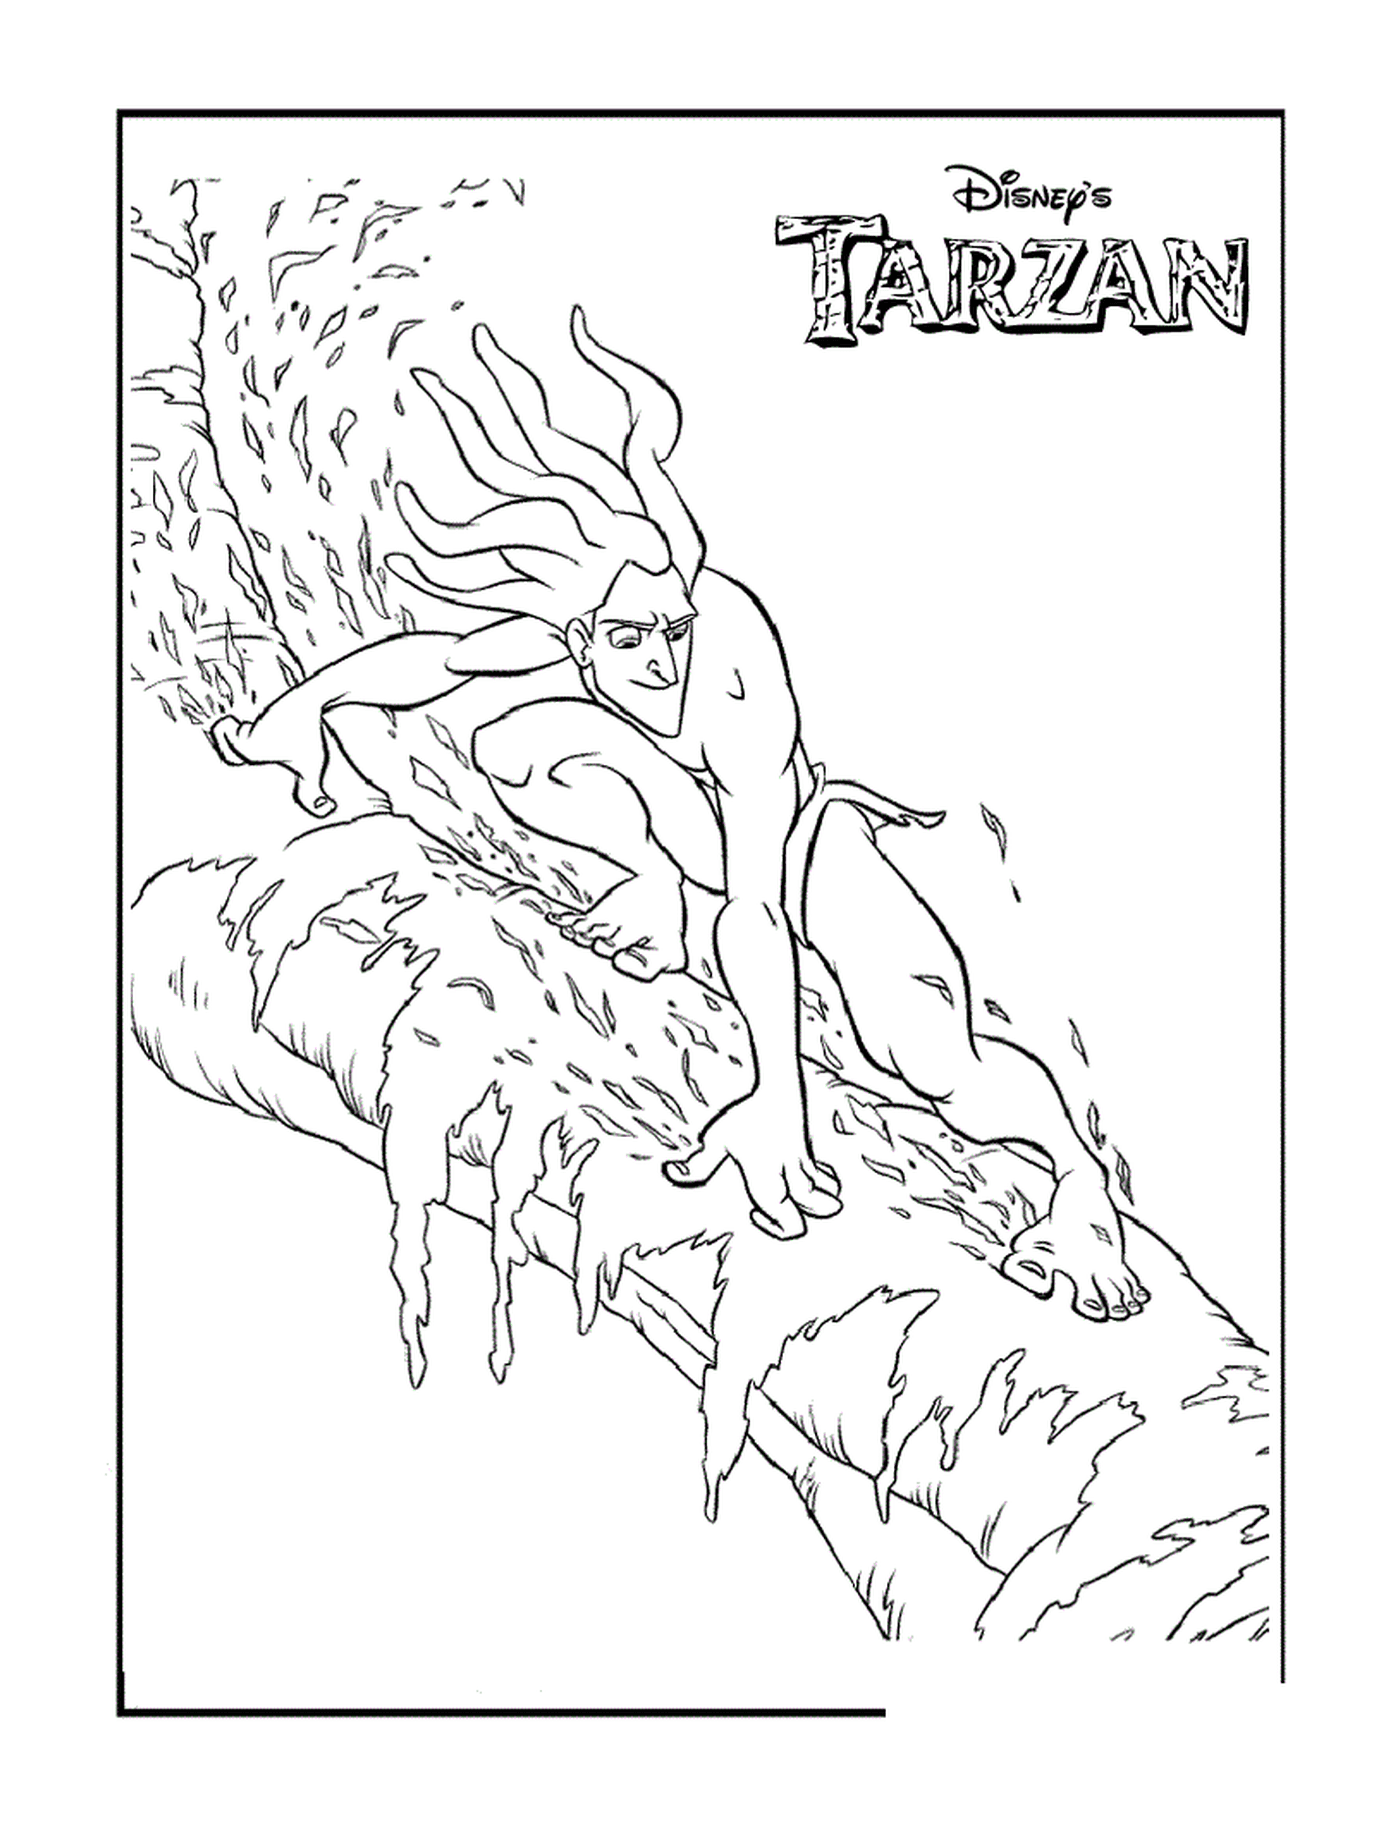  Tarzan fugge dalle liane 